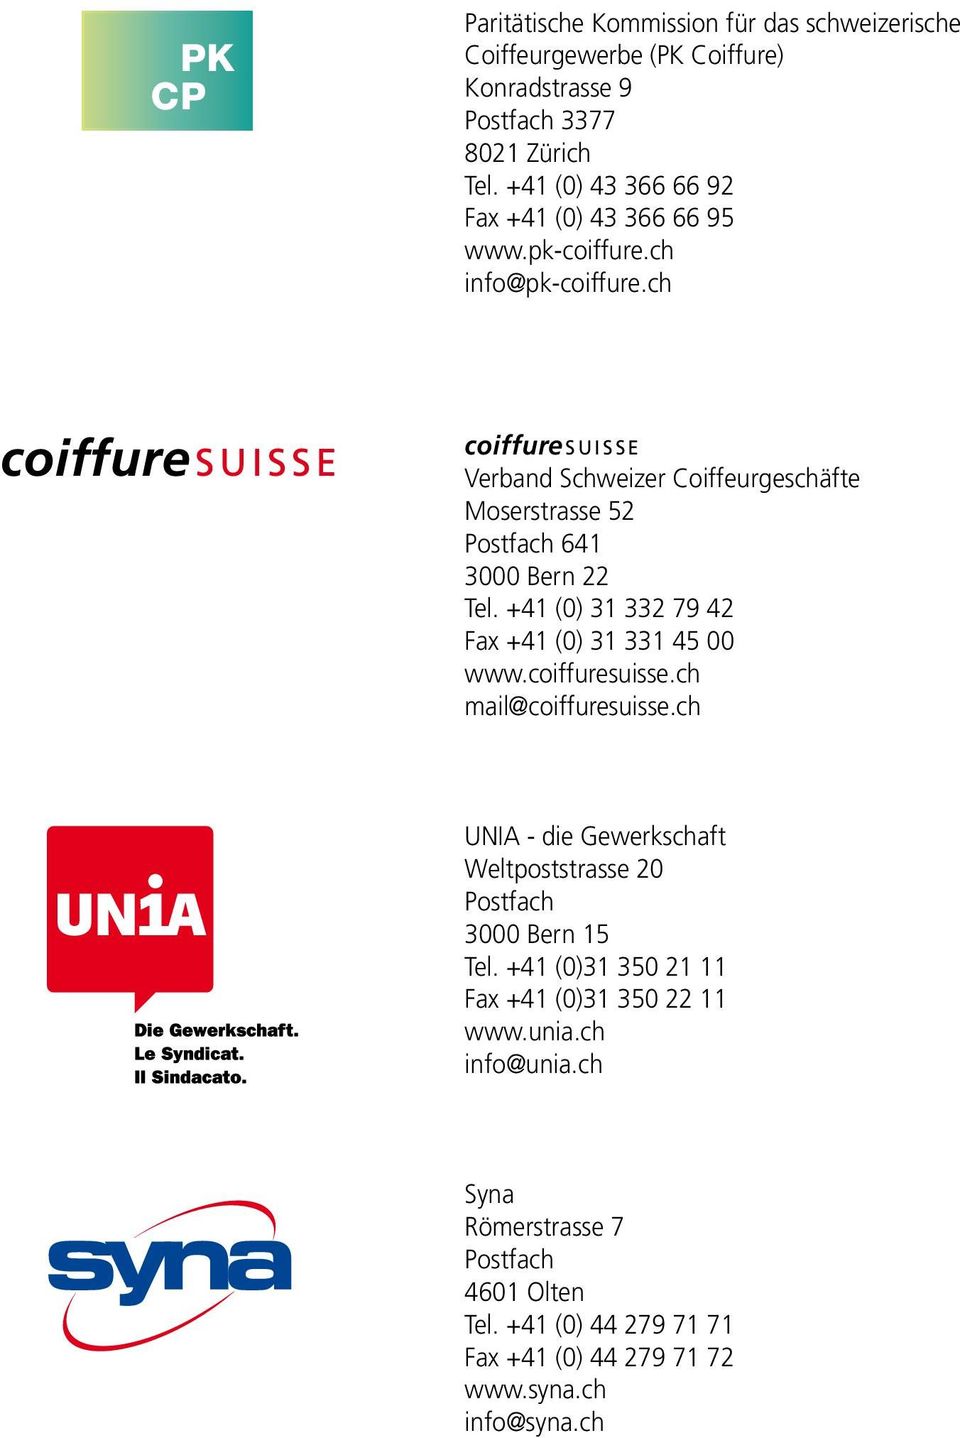 ch coiffuresuisse Verband Schweizer Coiffeurgeschäfte Moserstrasse 5 Postfach 64 000 Bern Tel. +4 (0) 79 4 Fax +4 (0) 45 00 www.coiffuresuisse.ch mail@coiffuresuisse.